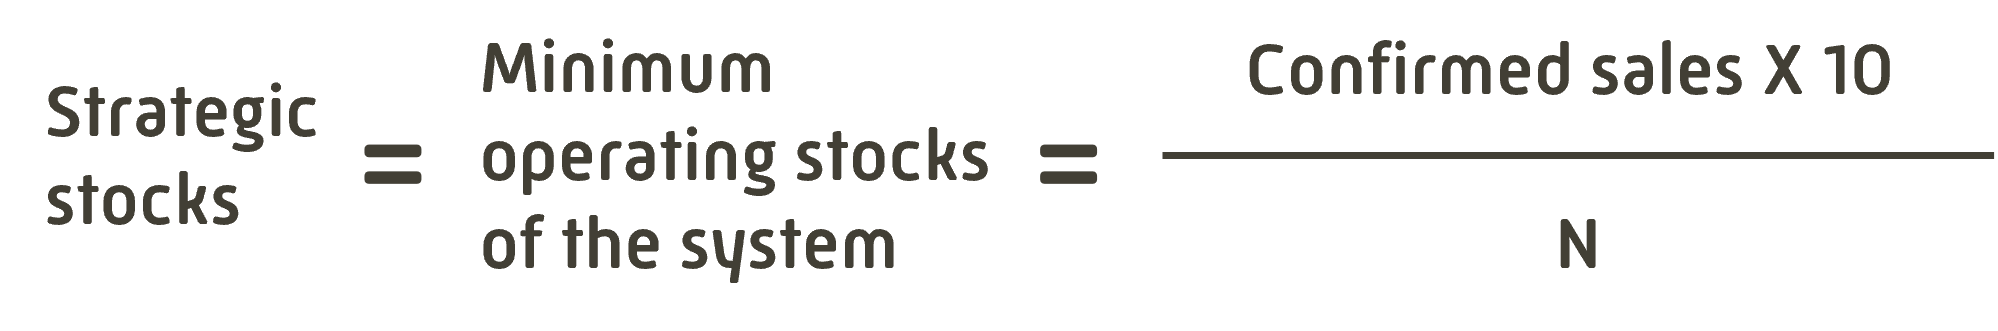 calculation minimum security stocks